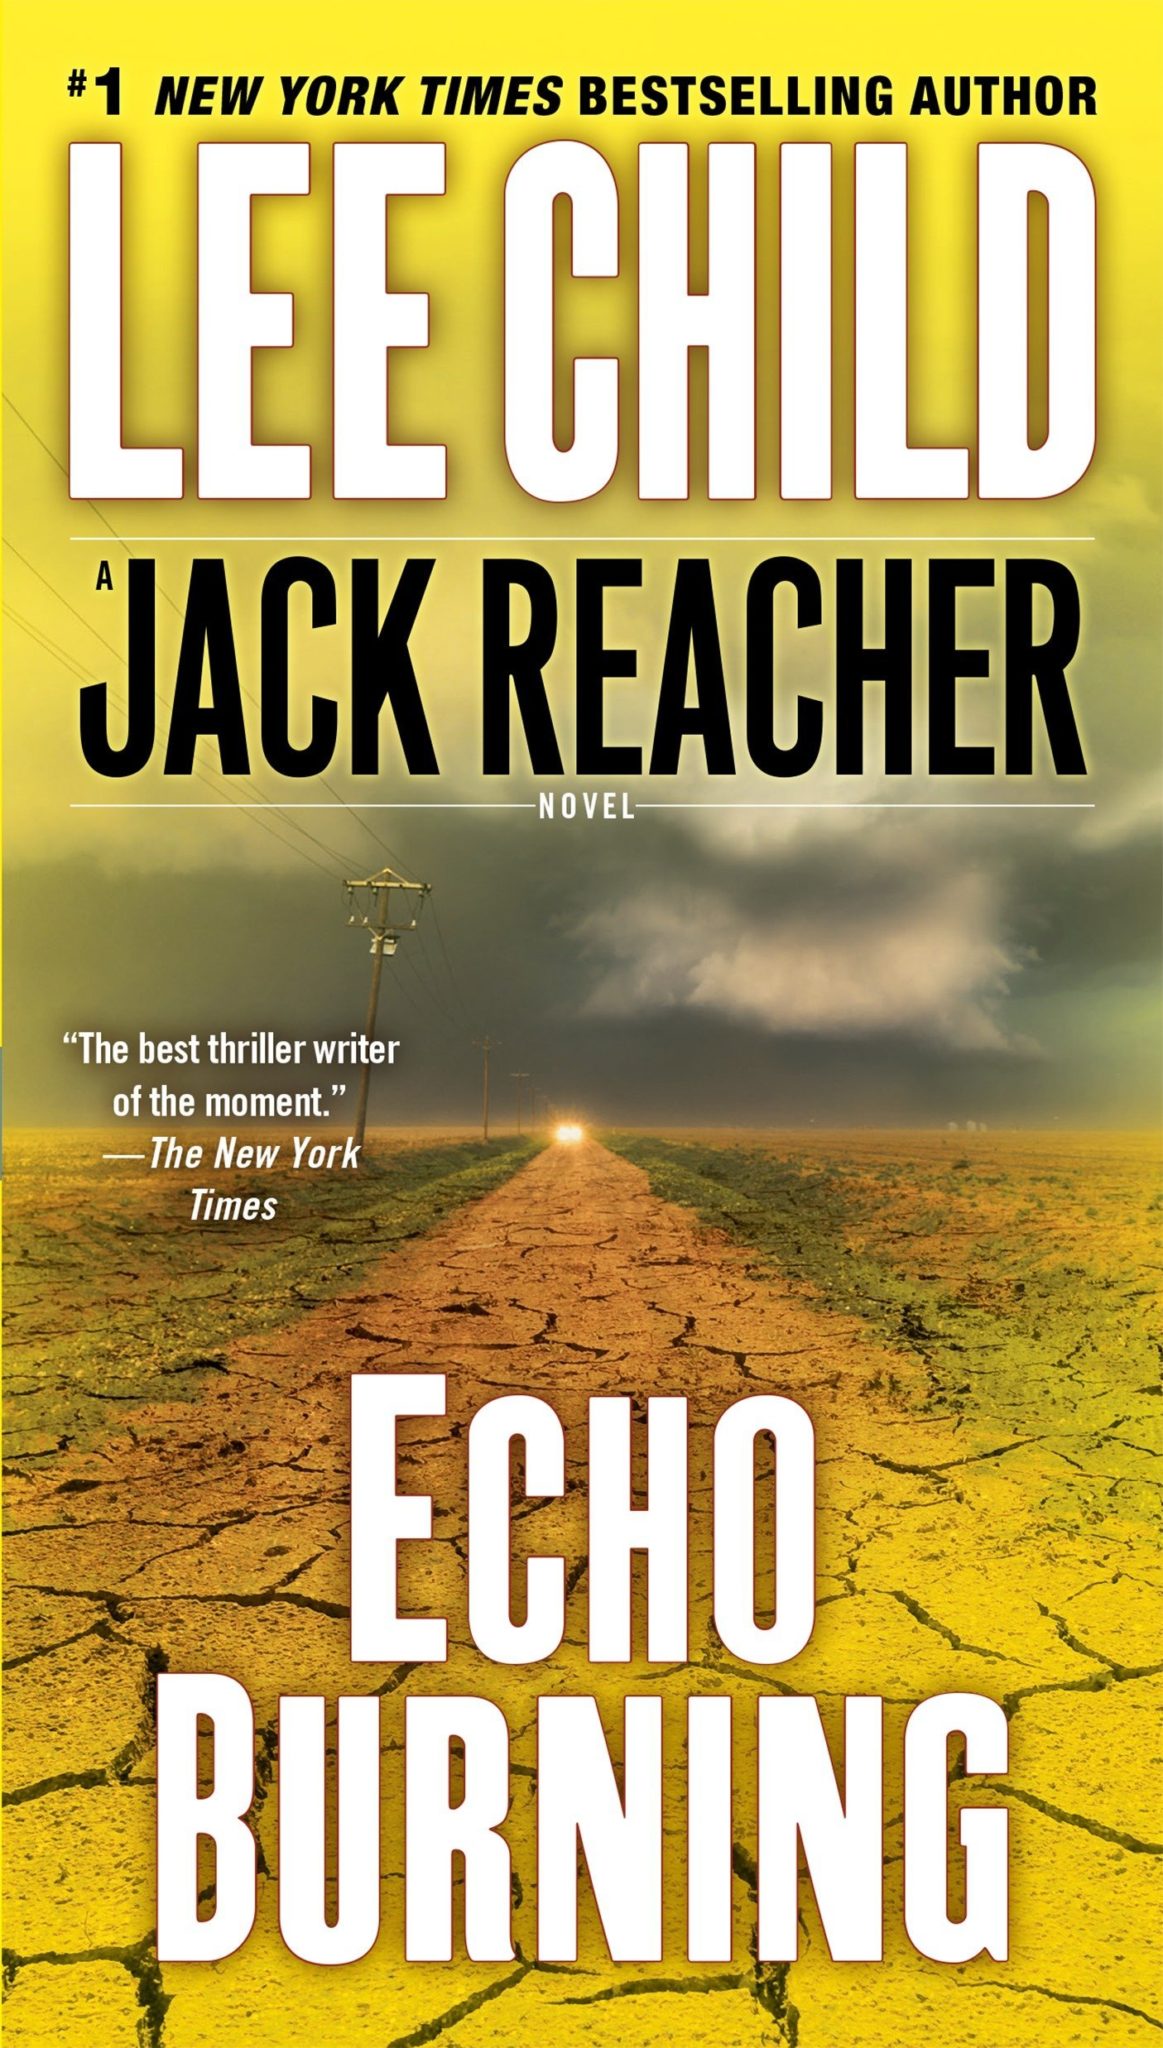 Libros Jack Reacher en orden 5